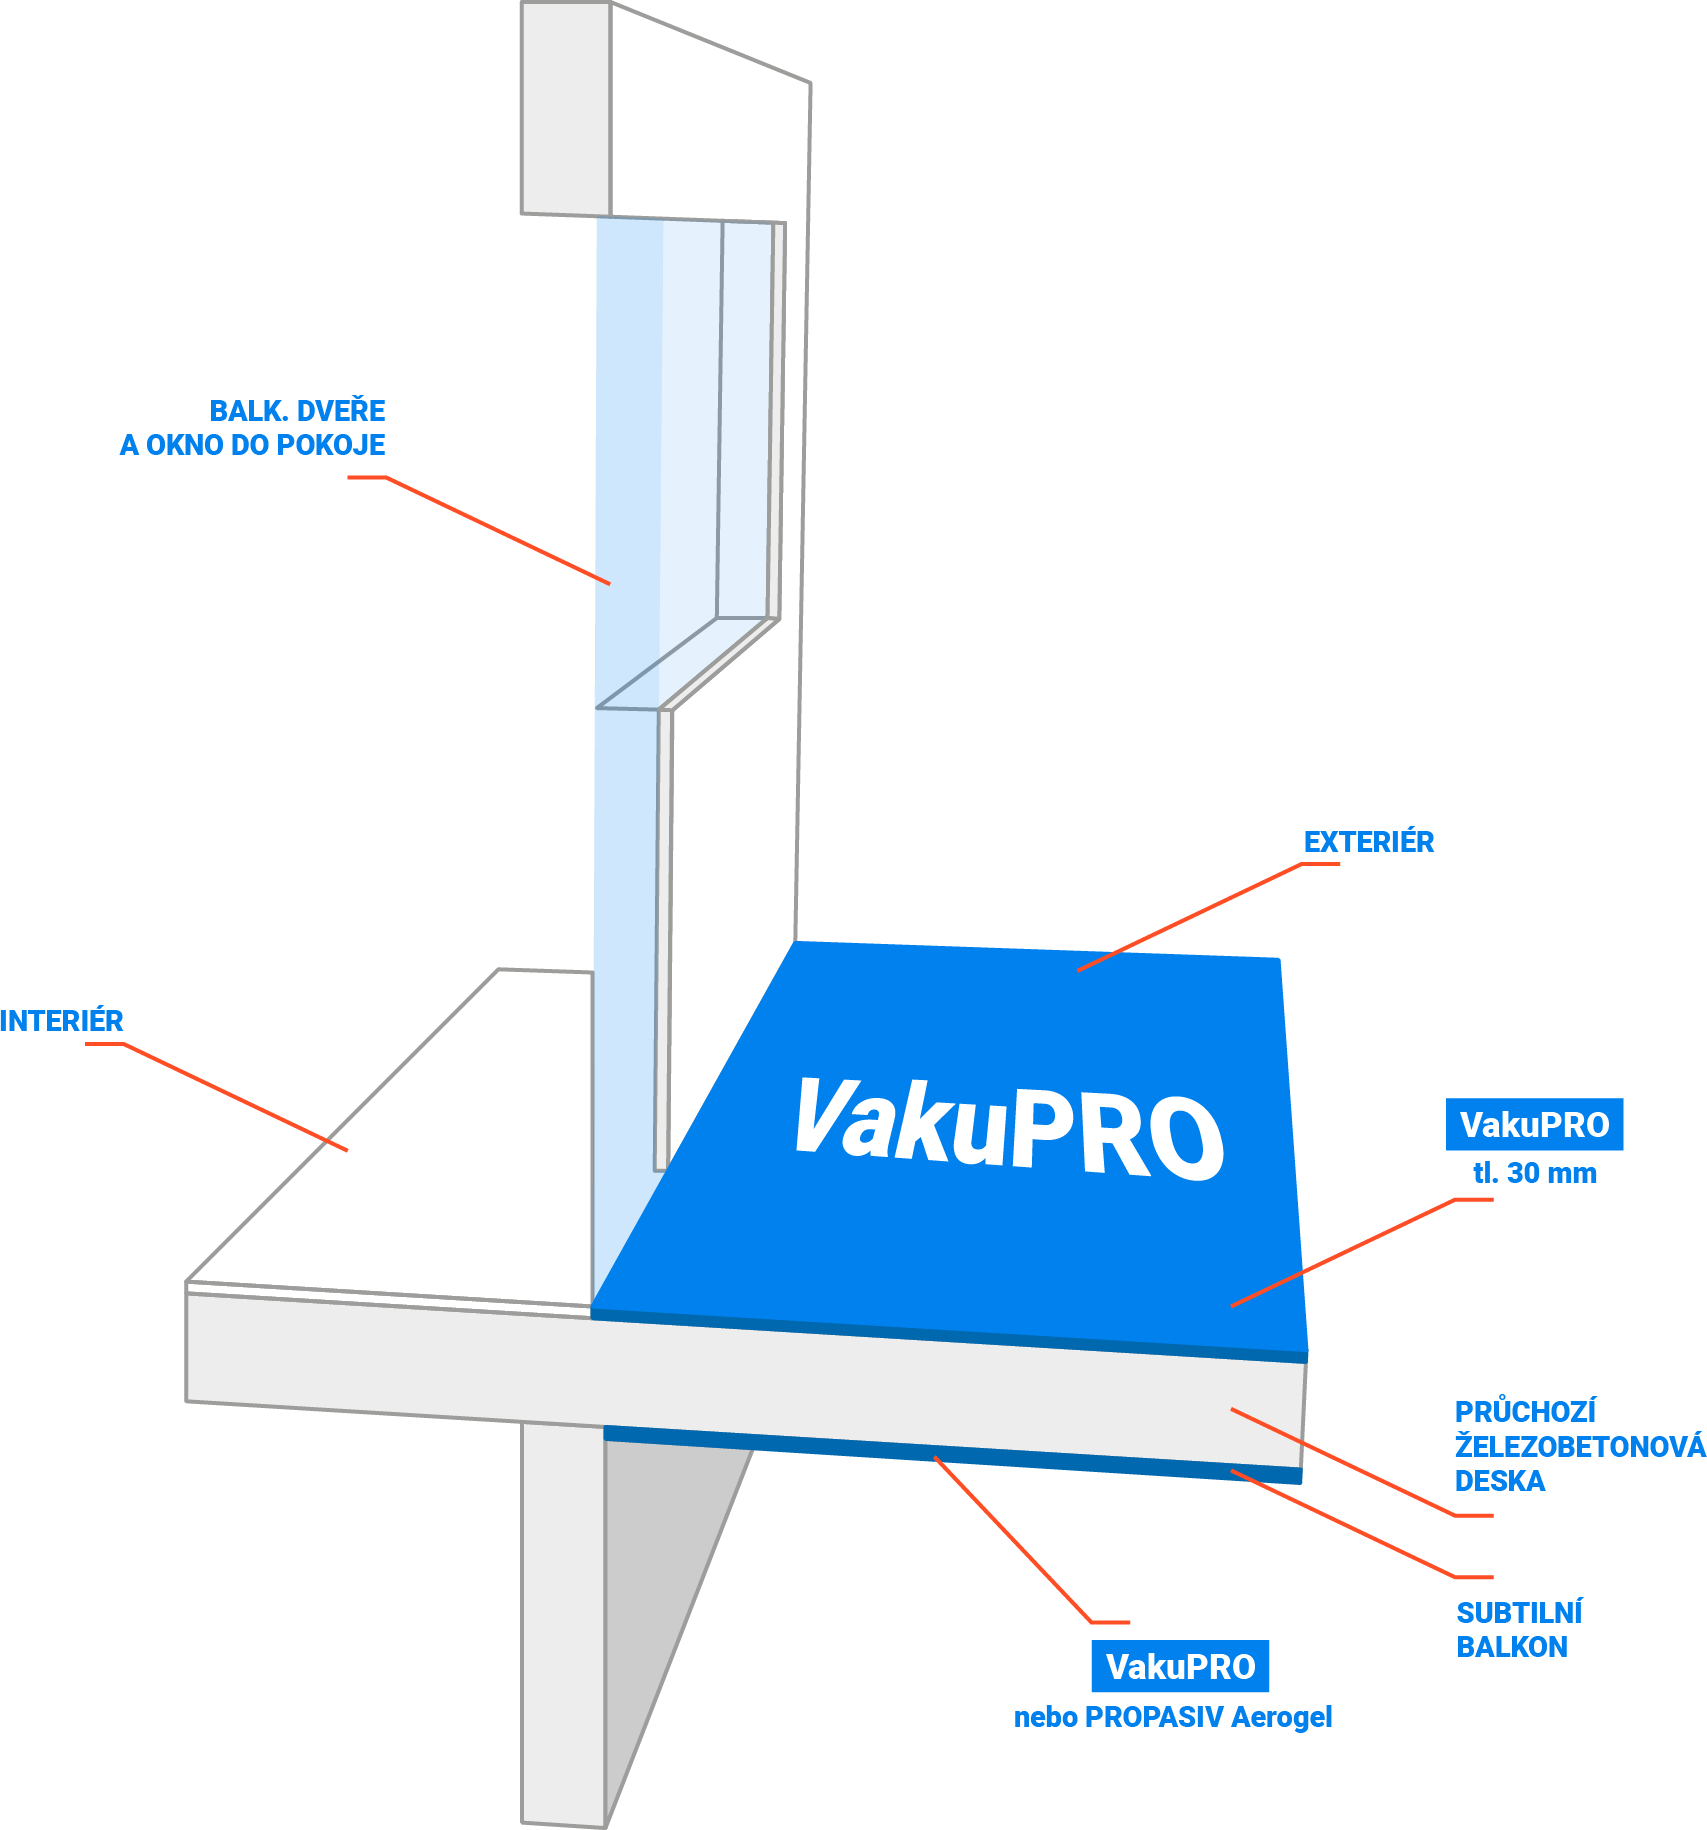 Balkonová deska s VakuPRO